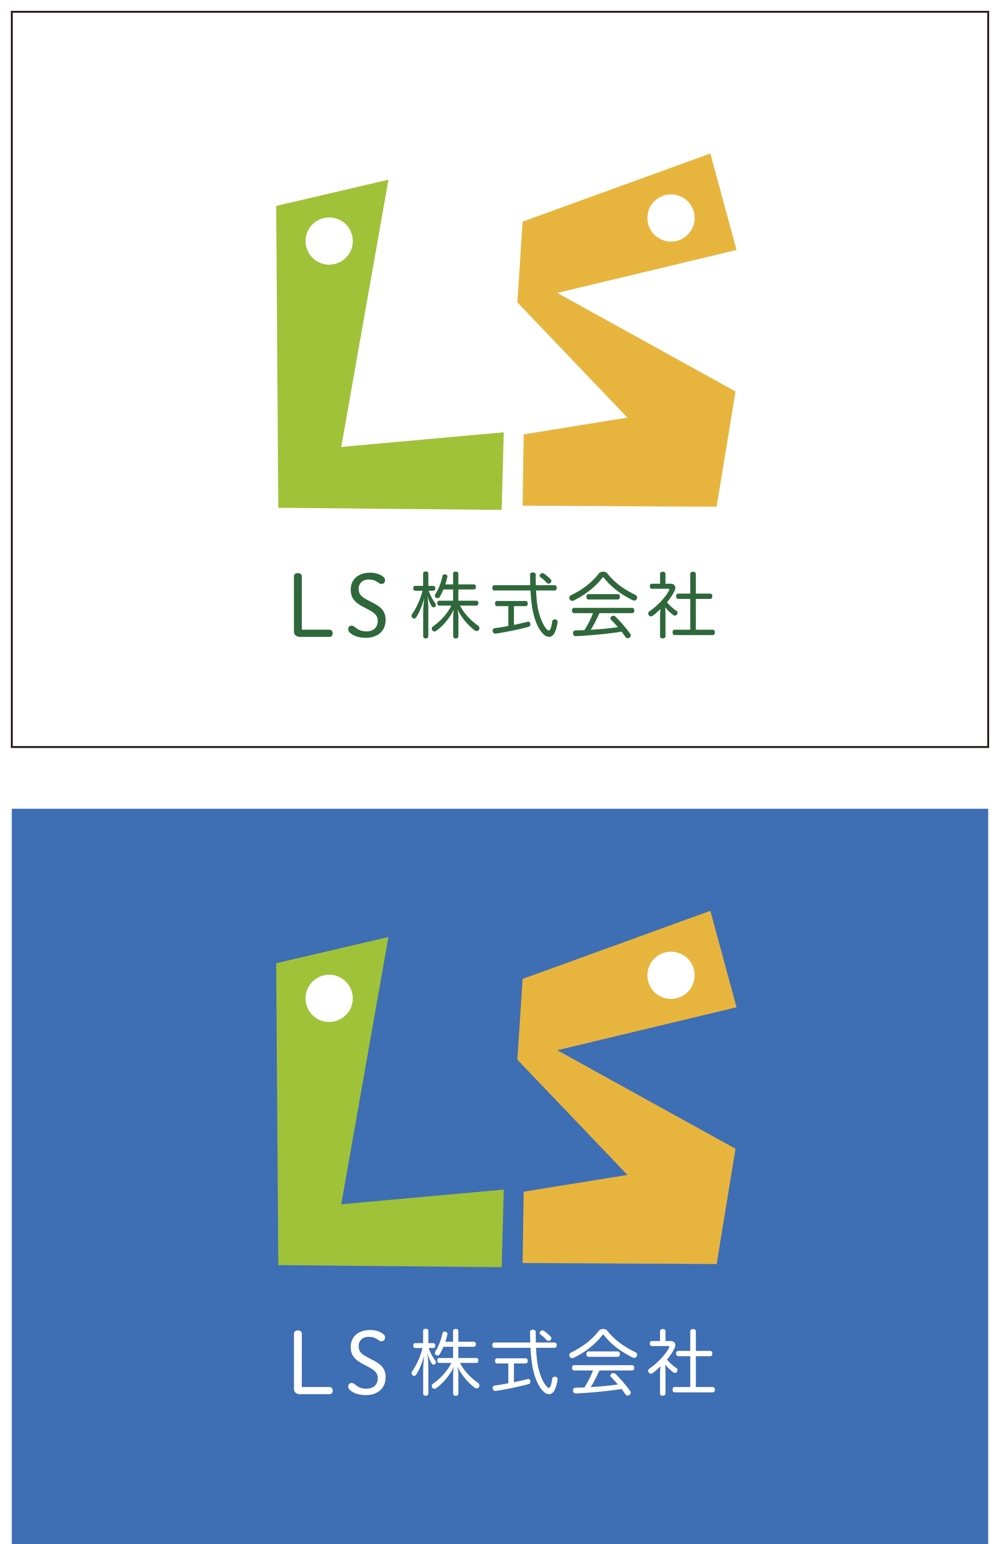 LS株式会社-001 3.jpg